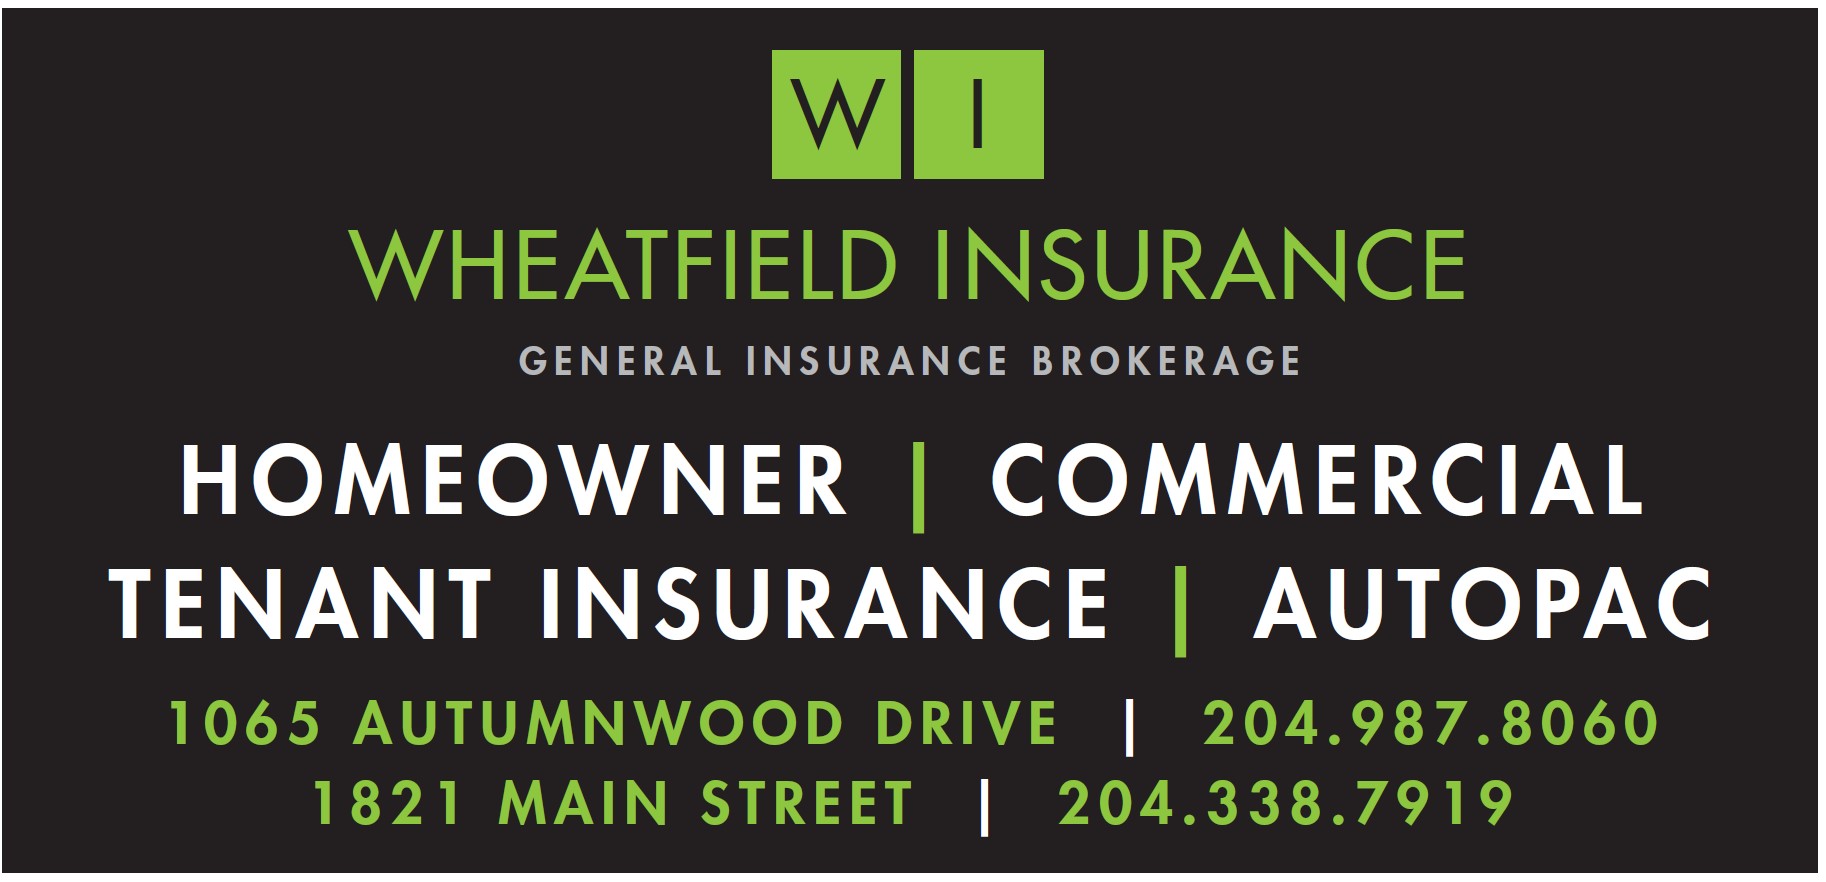 Wheatfield Insurance General Insurance Brokerage